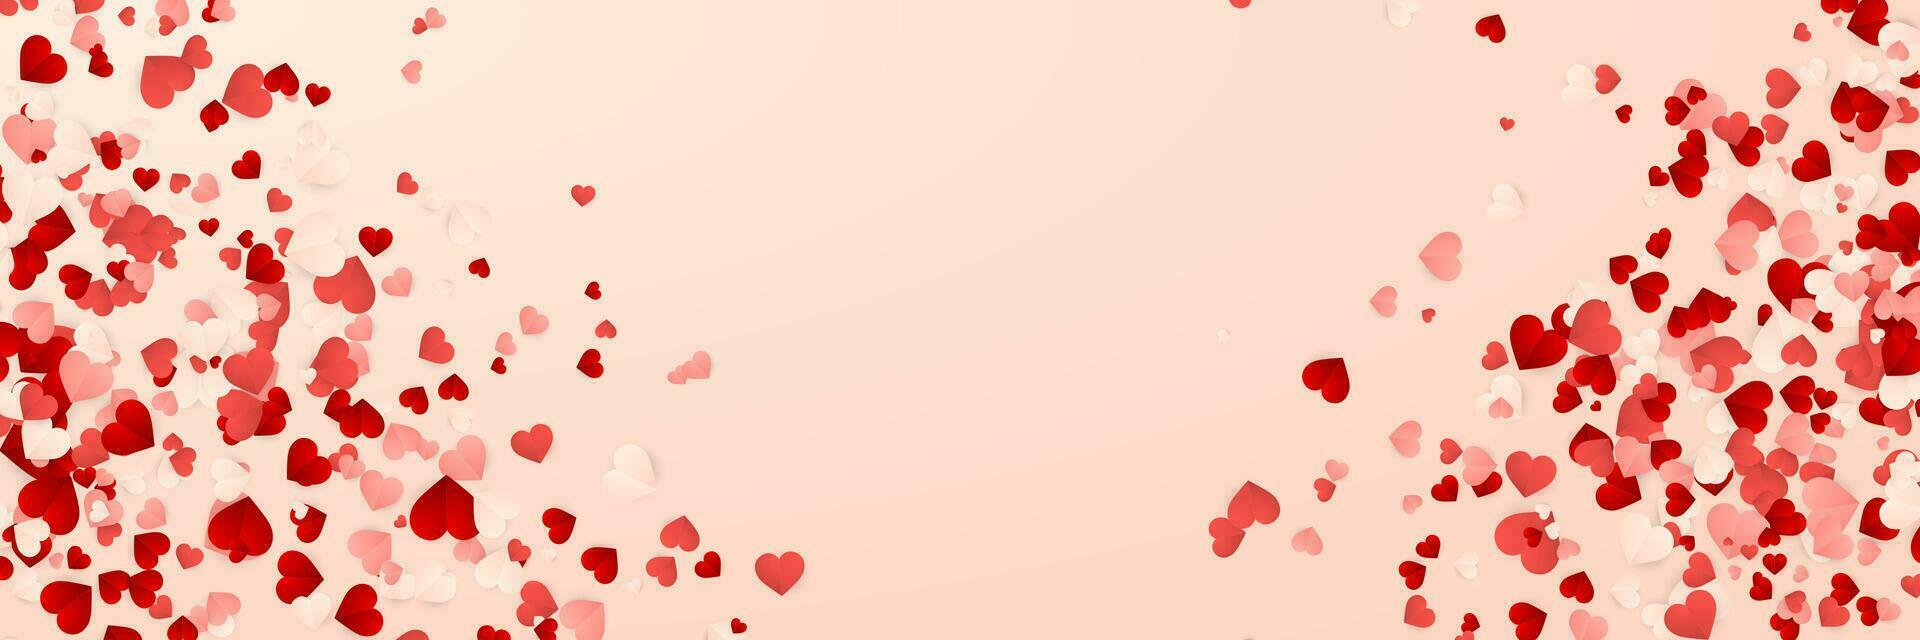 Lycklig valentines dag bakgrund, papper röd, rosa och vit hjärtan konfetti. vektor illustration